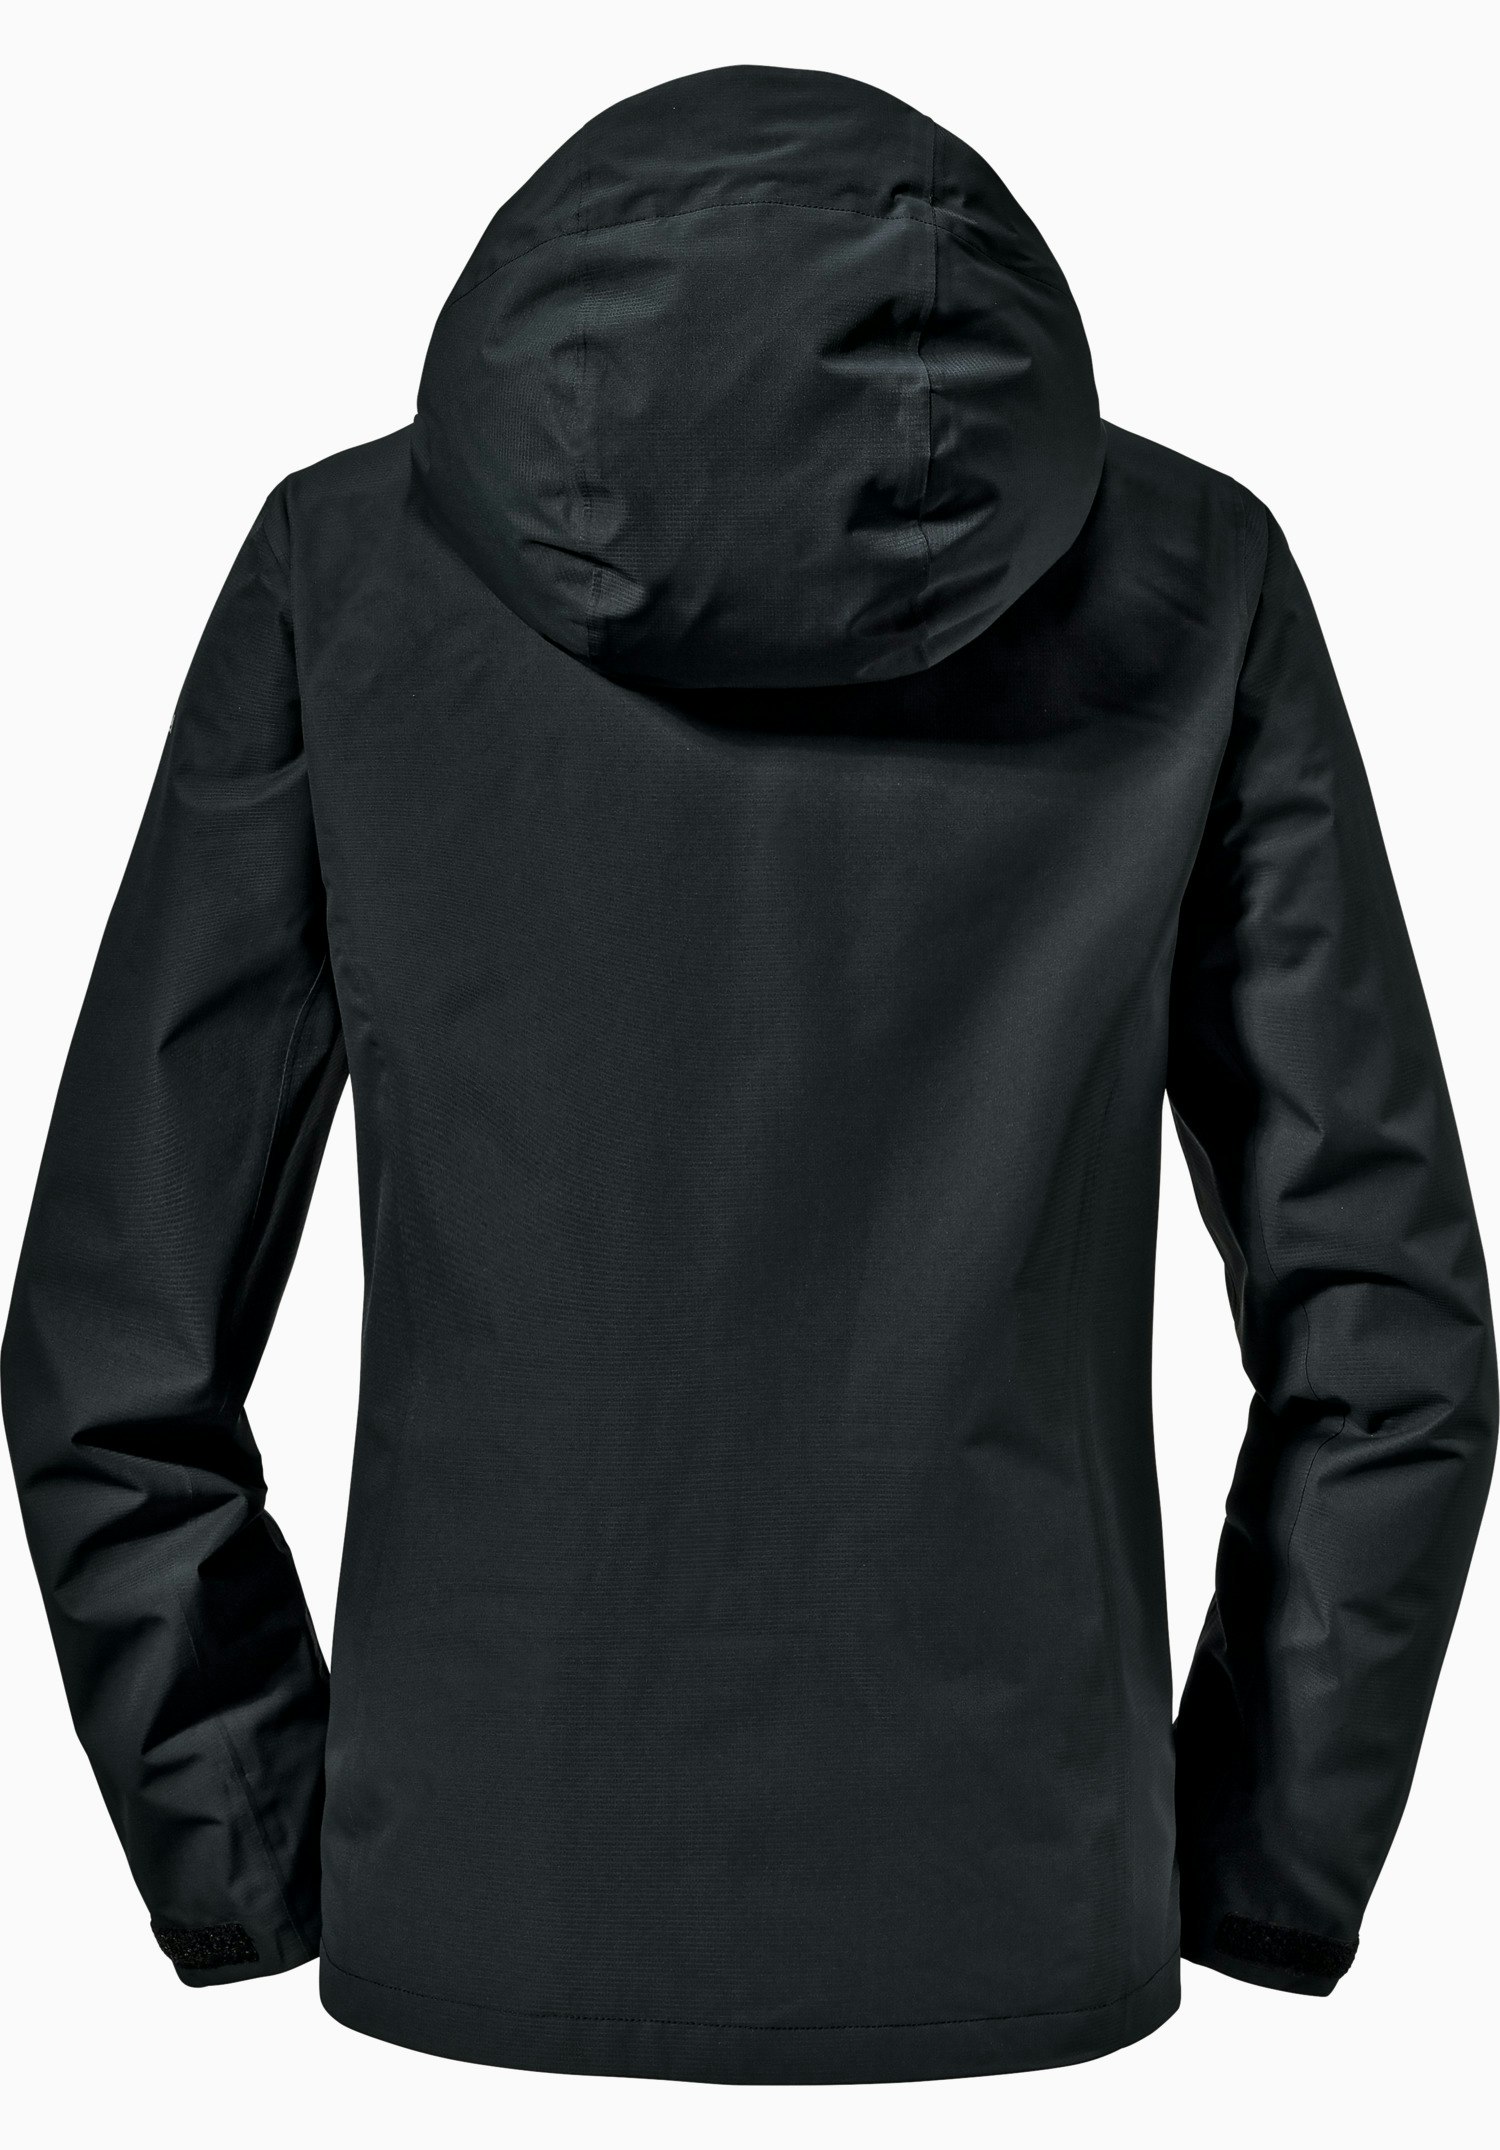 Jacket Gmund L black | Schöffel